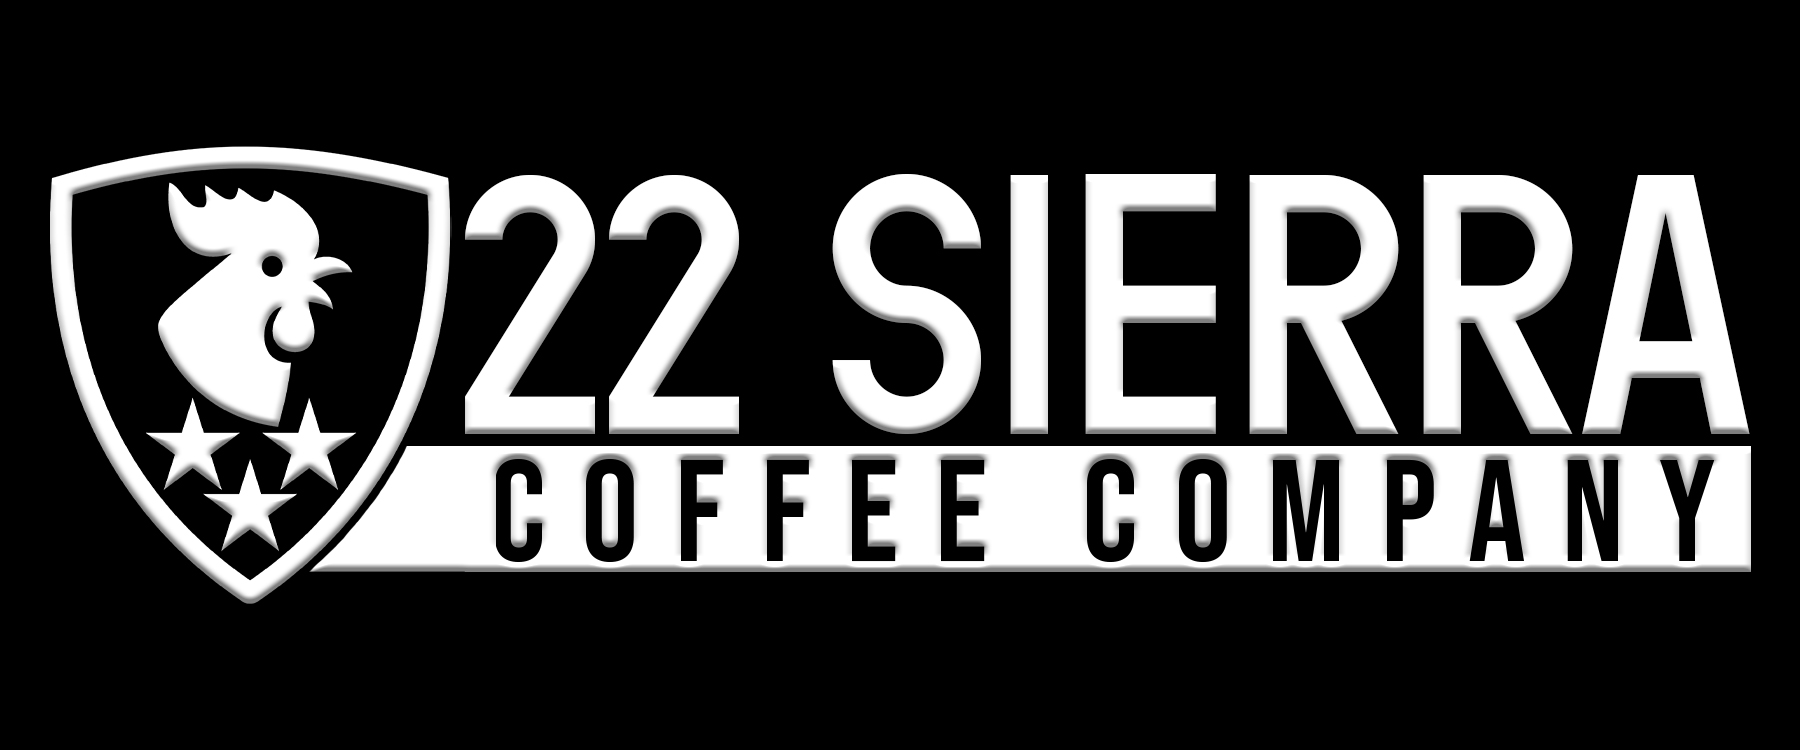 22 Sierra Coffee Co. logo 